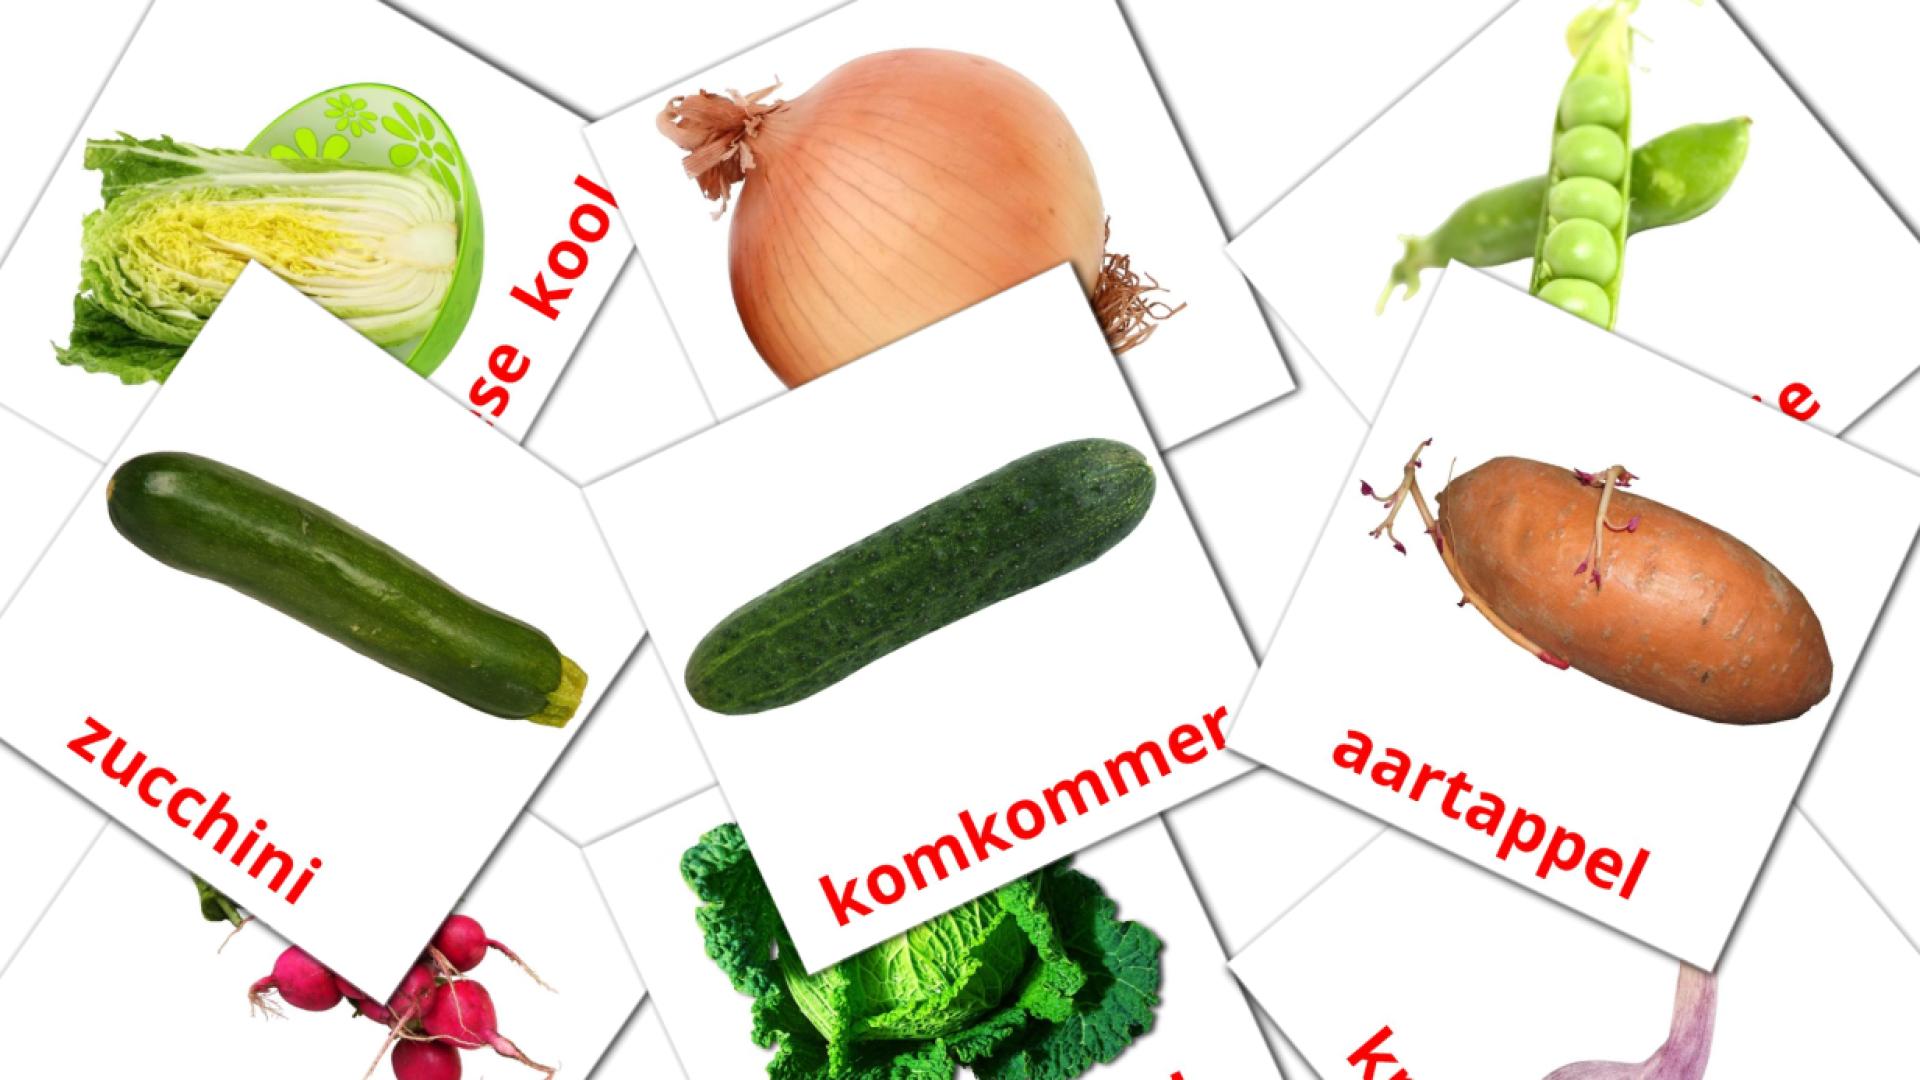 Les Légumes - cartes de vocabulaire afrikaans